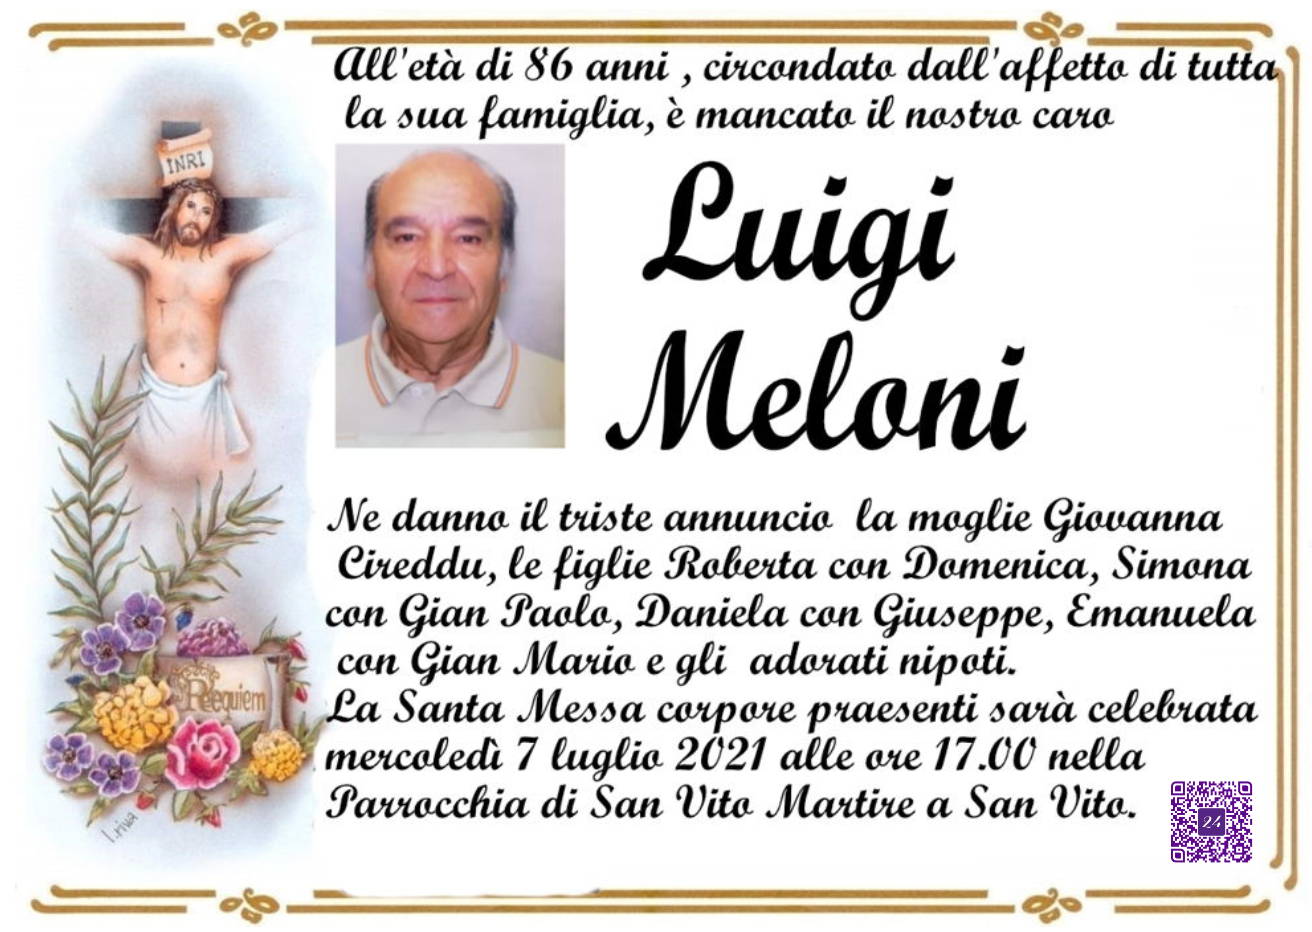 Luigi Meloni